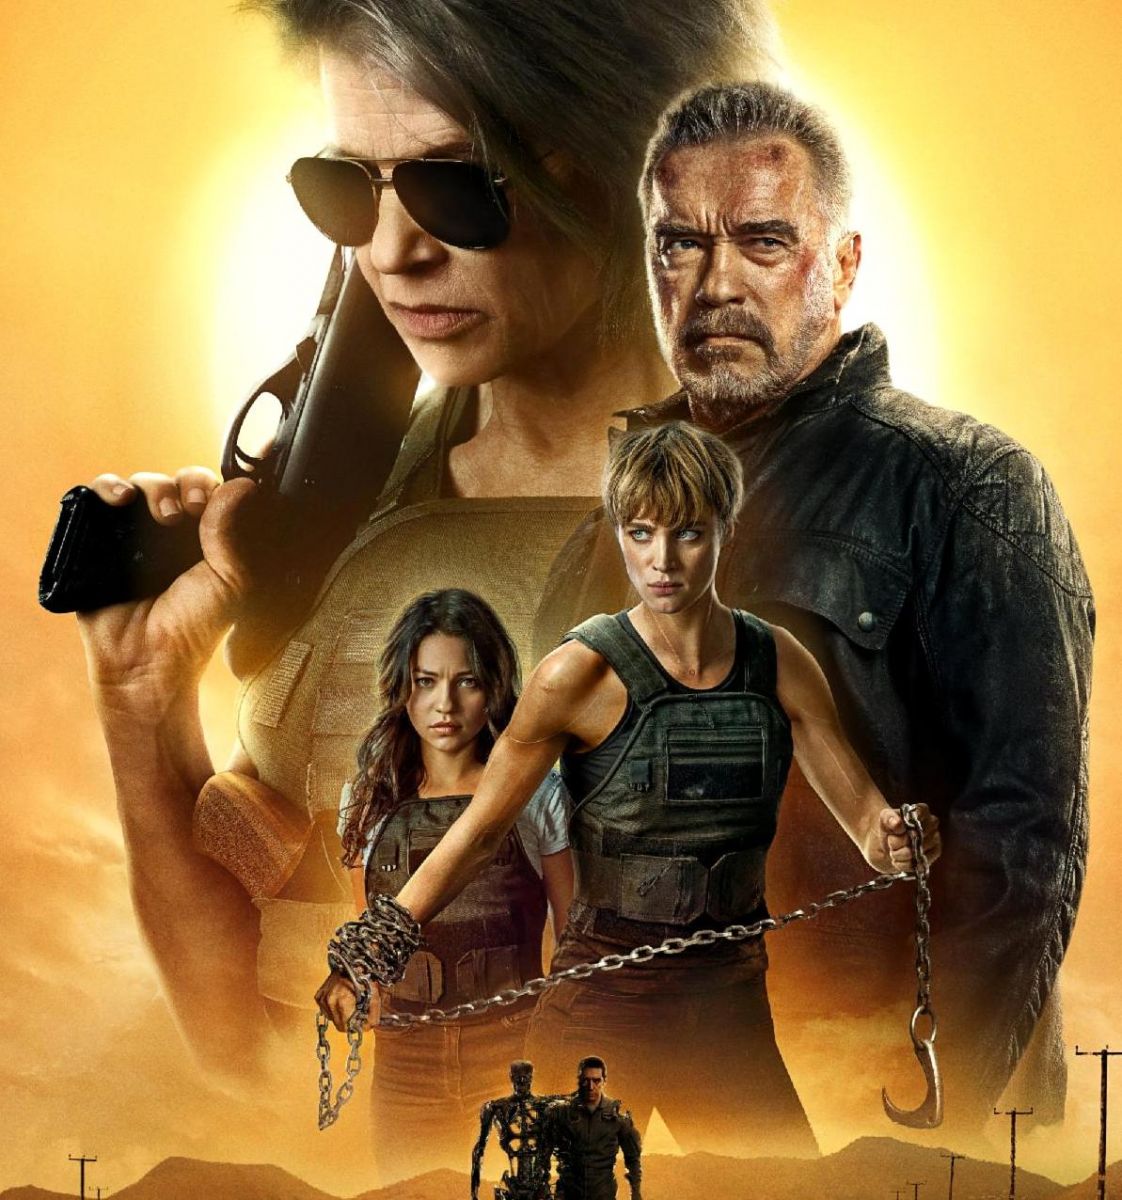 Actriz colombiana por la conquista del mundo con su papel estelar en Terminator 